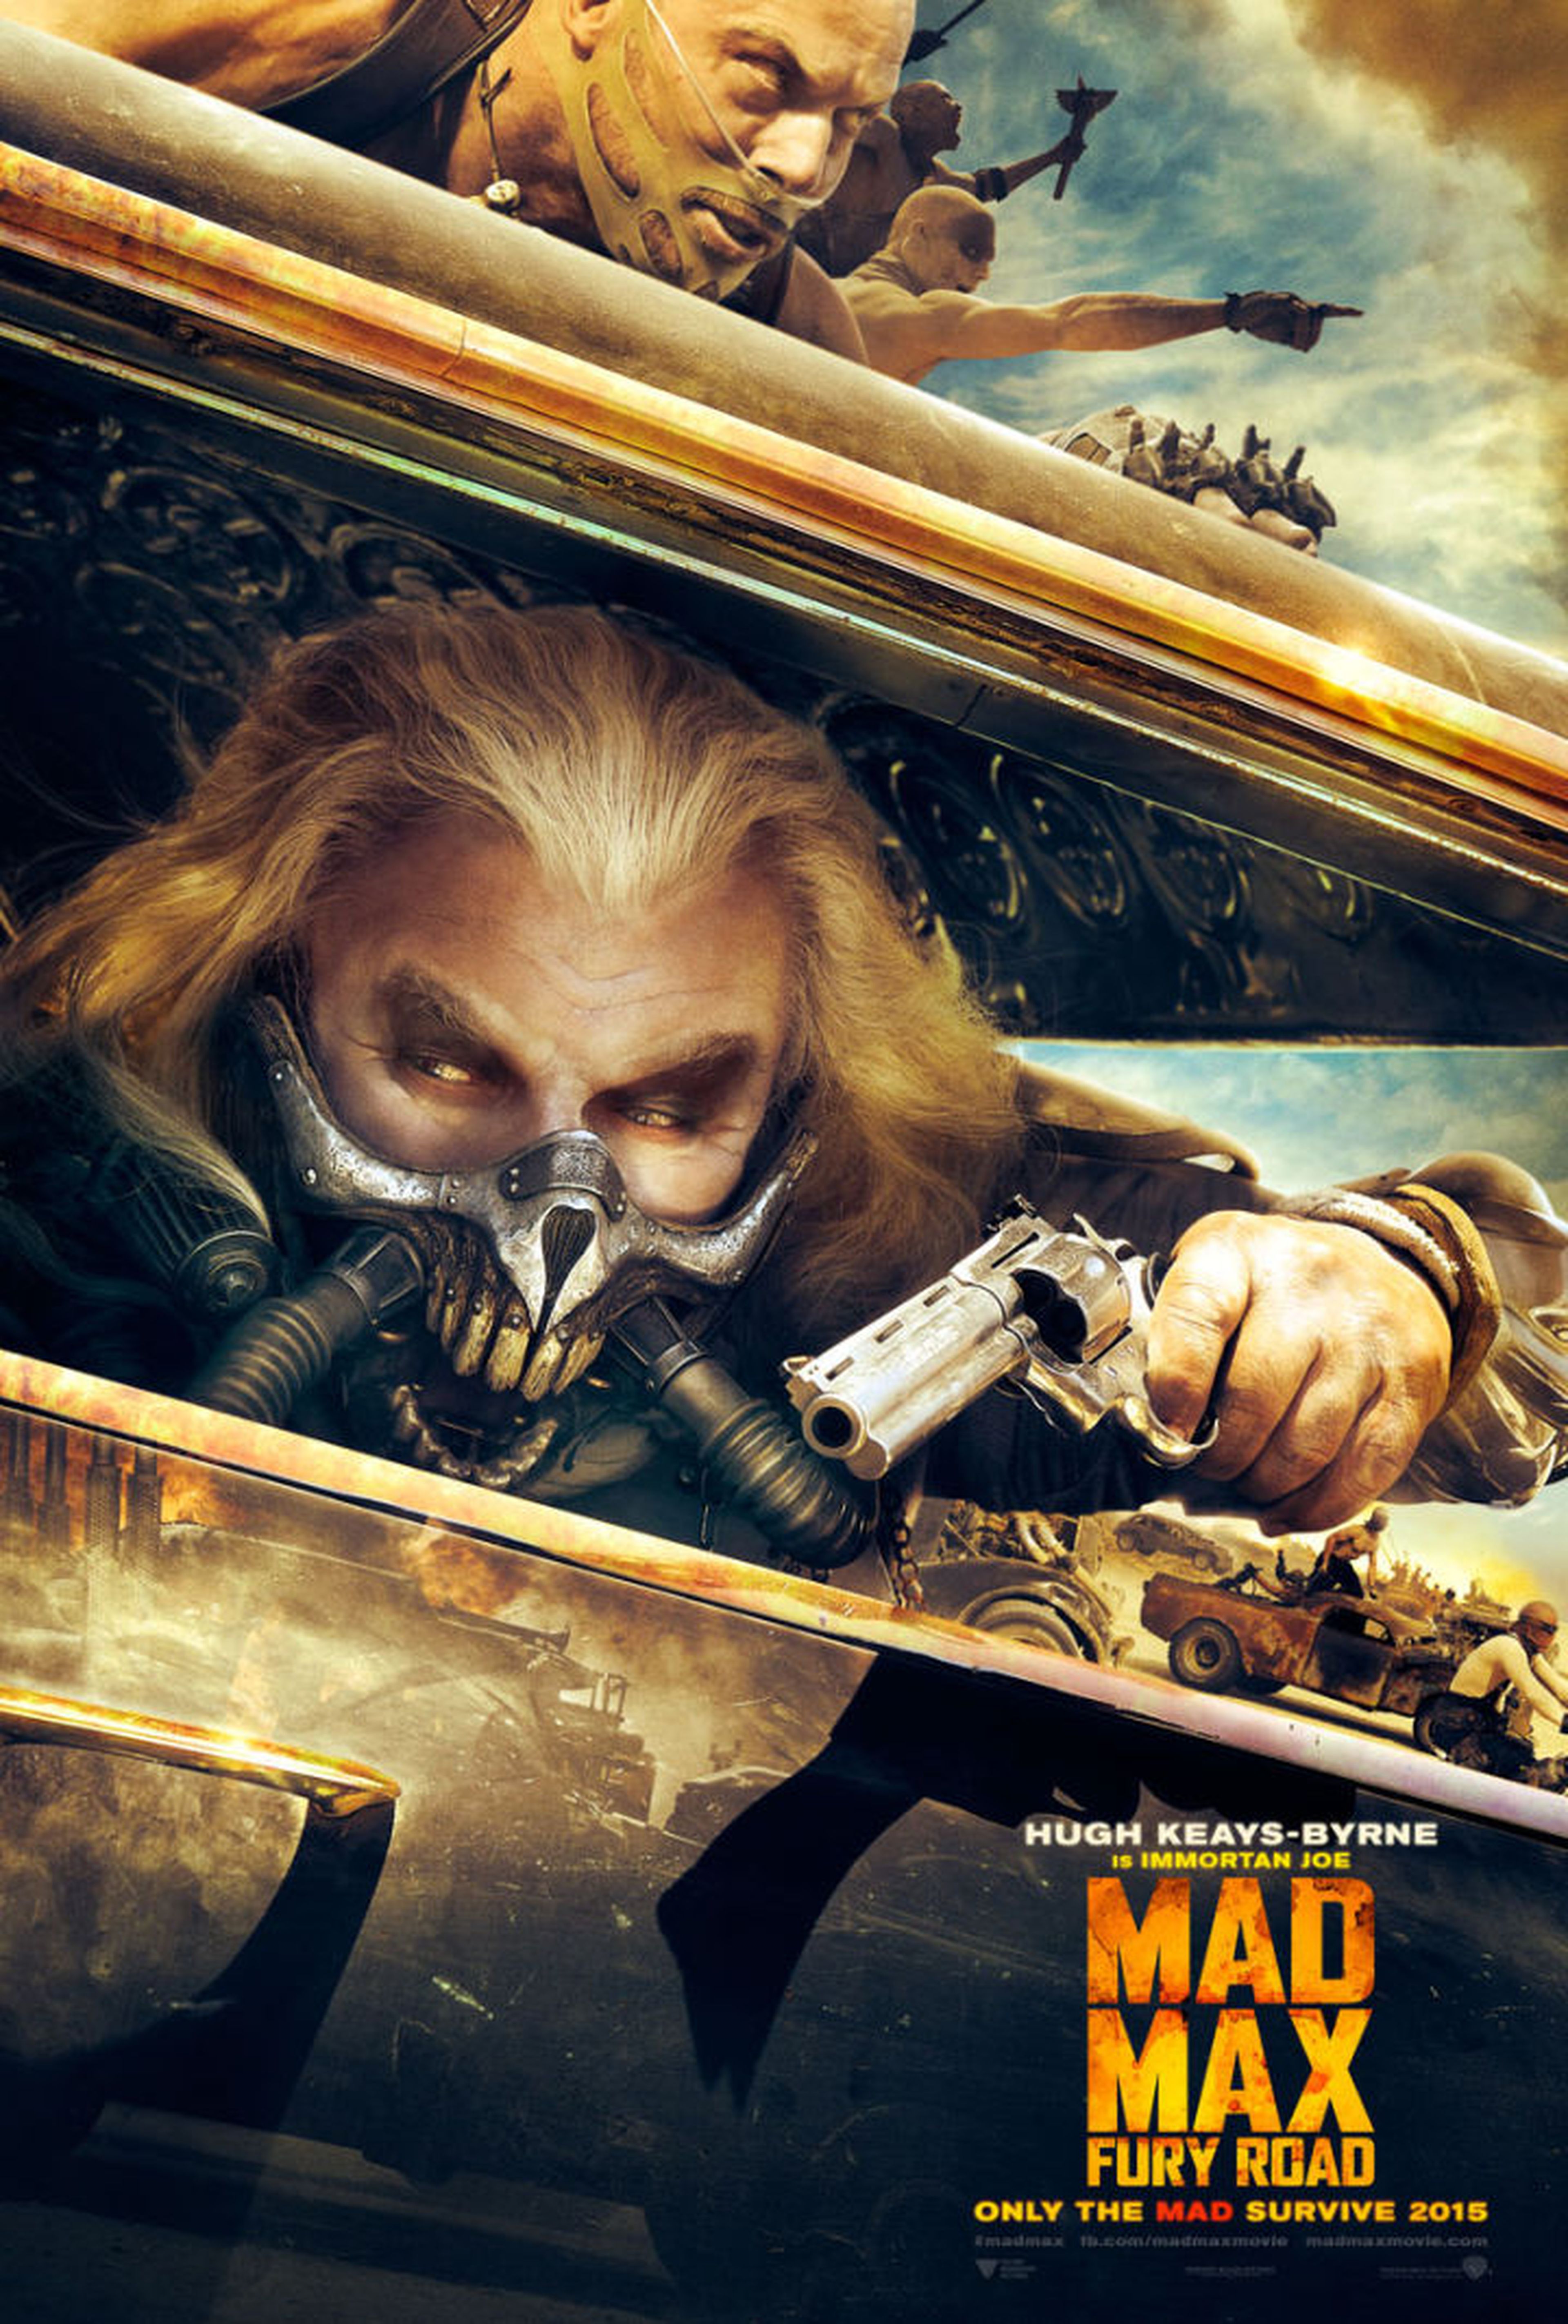 Mad Max: furia en la carretera y su galería de personajes